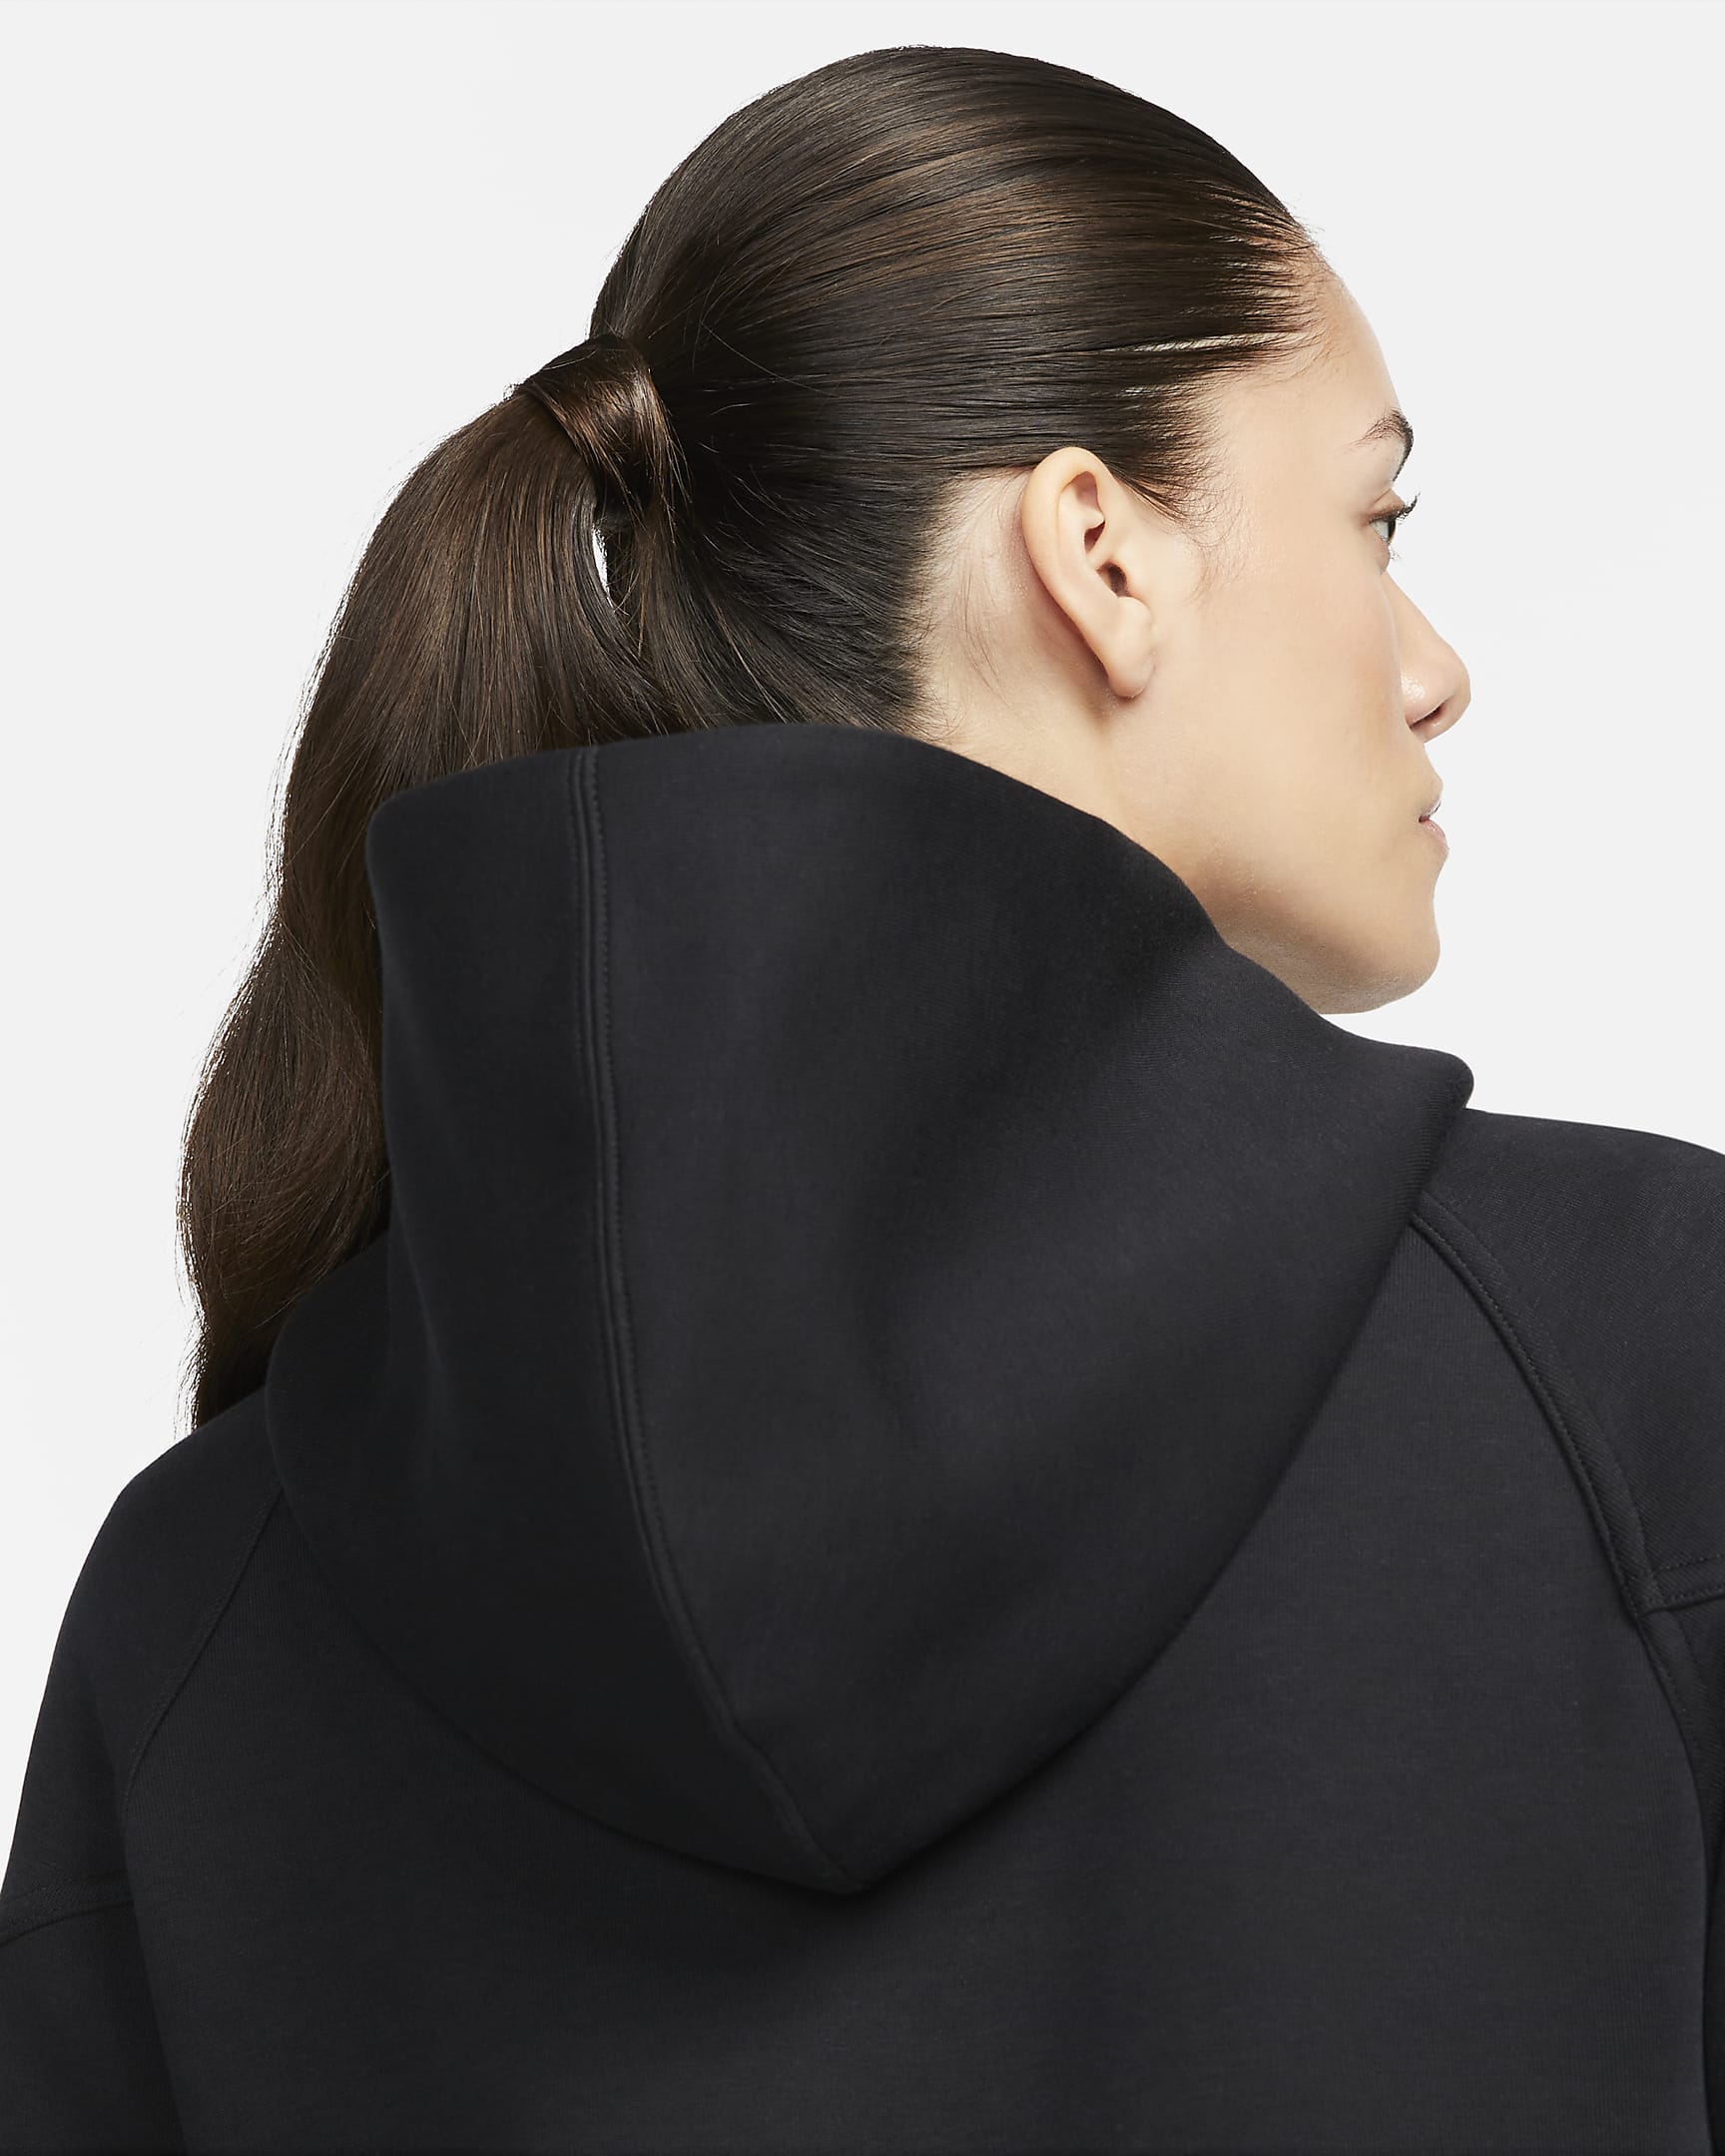 Nike Sportswear Tech Fleece Windrunner Women's Full-Zip Hoodie - Black/Black